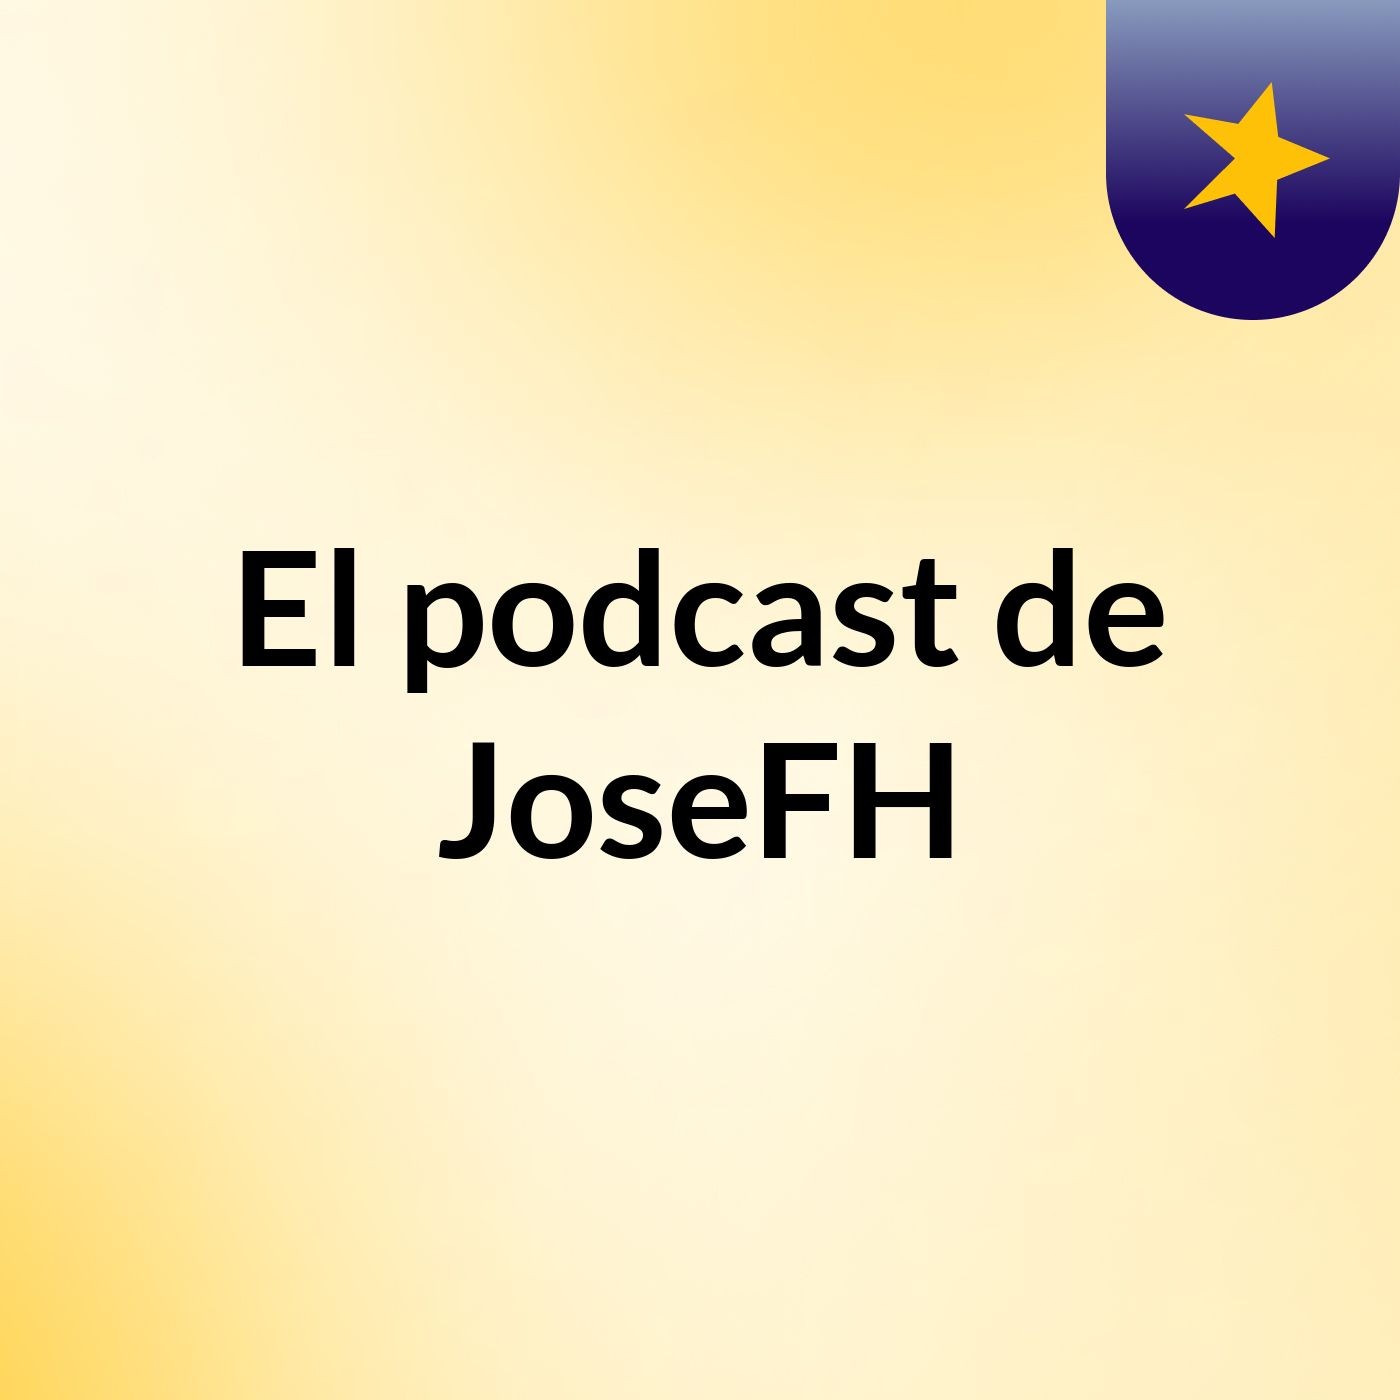 El podcast de JoseFH